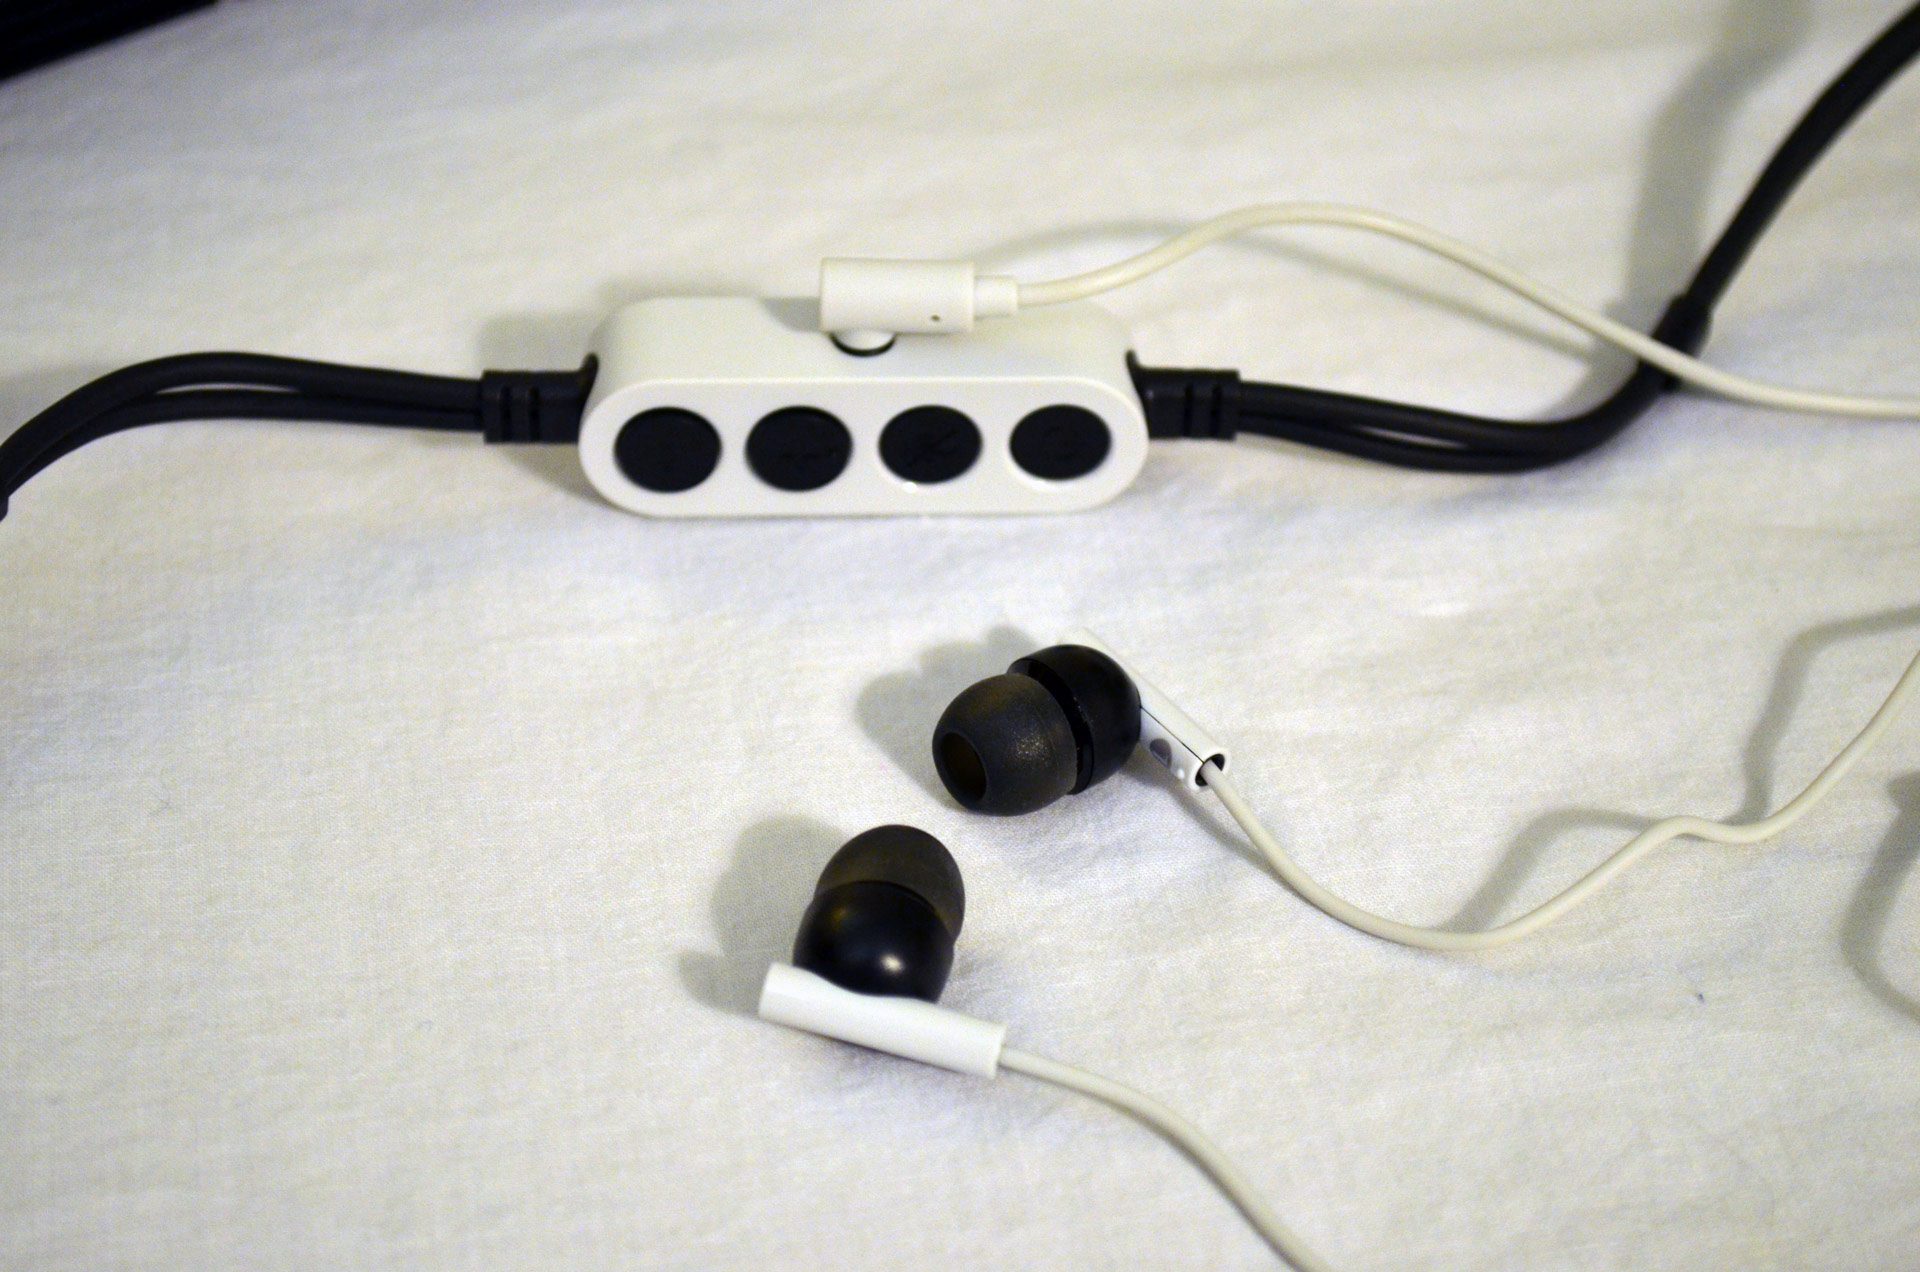 ps4 vr headset earphones